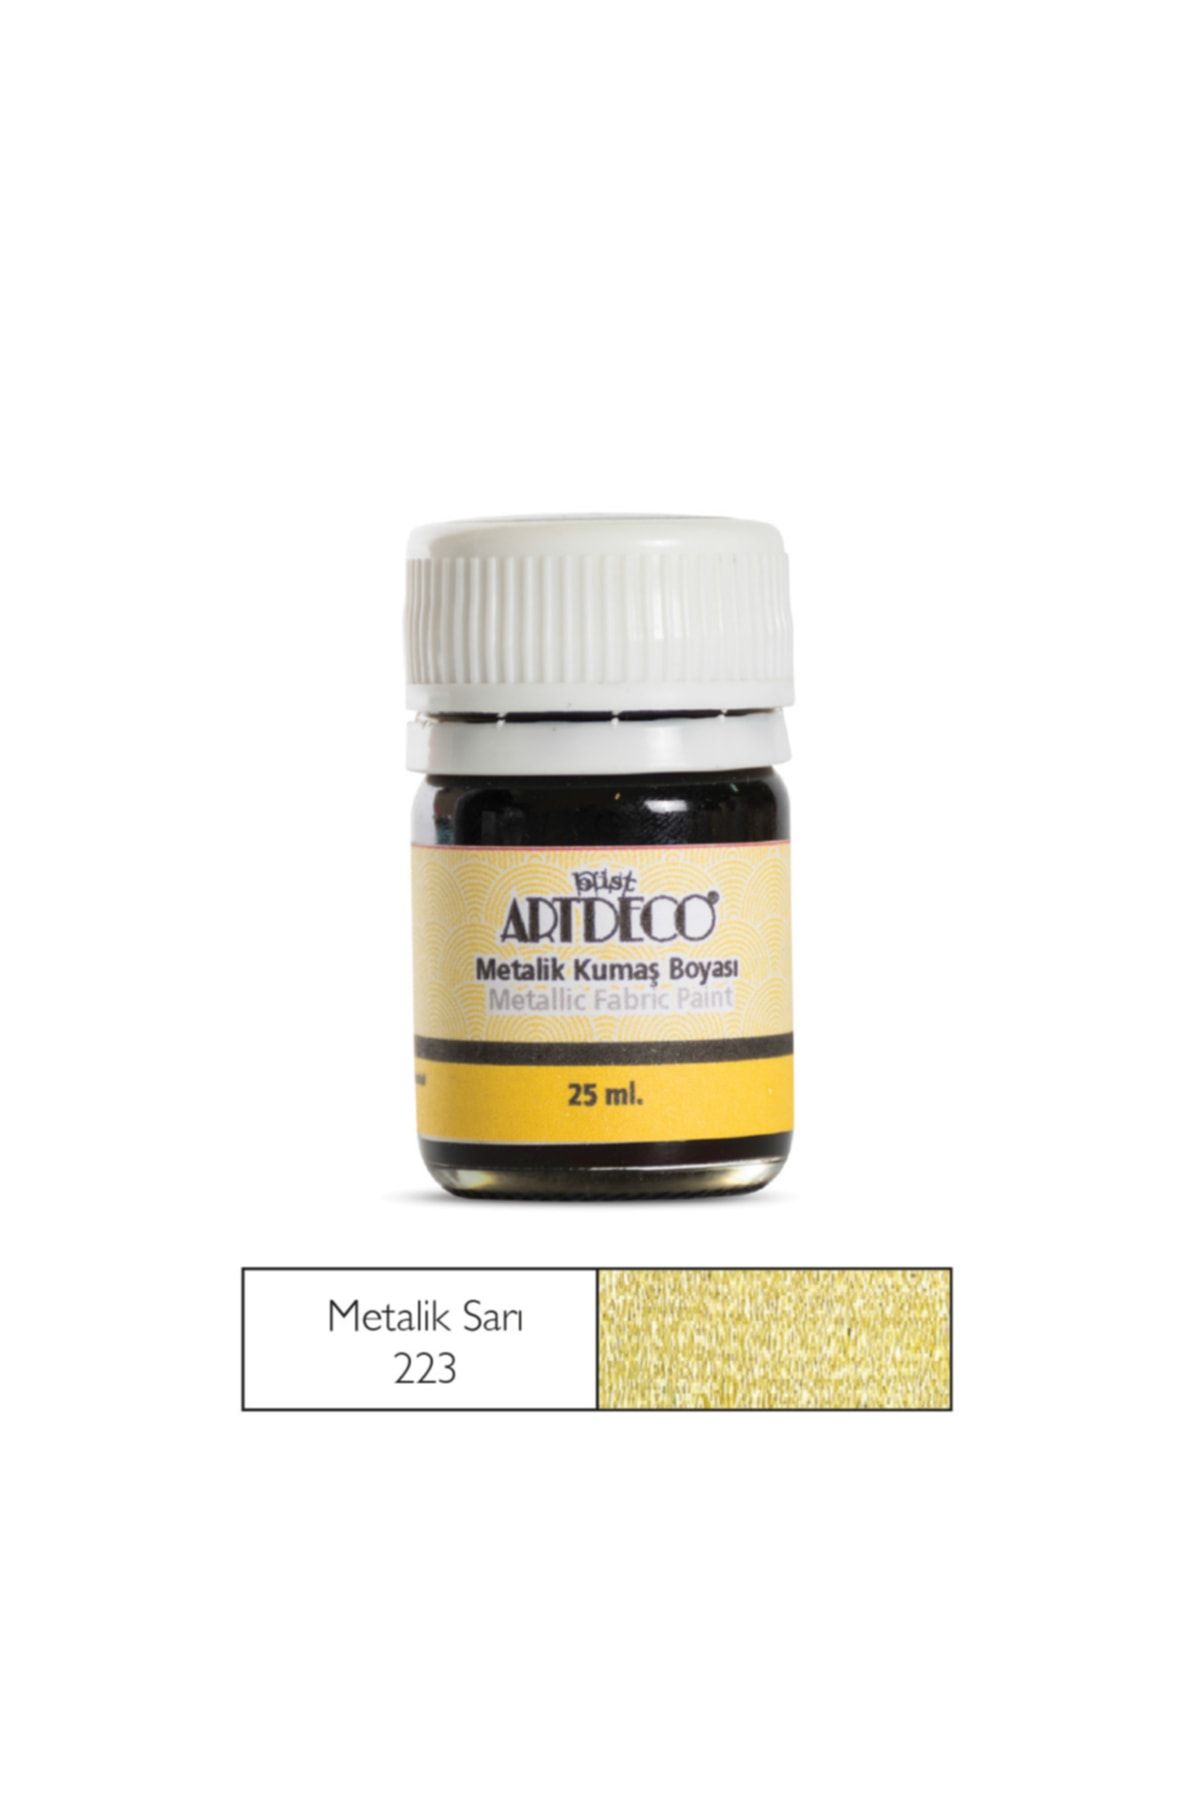 Artdeco Metalik Kumaş Boyası 223 Sarı 25 ml